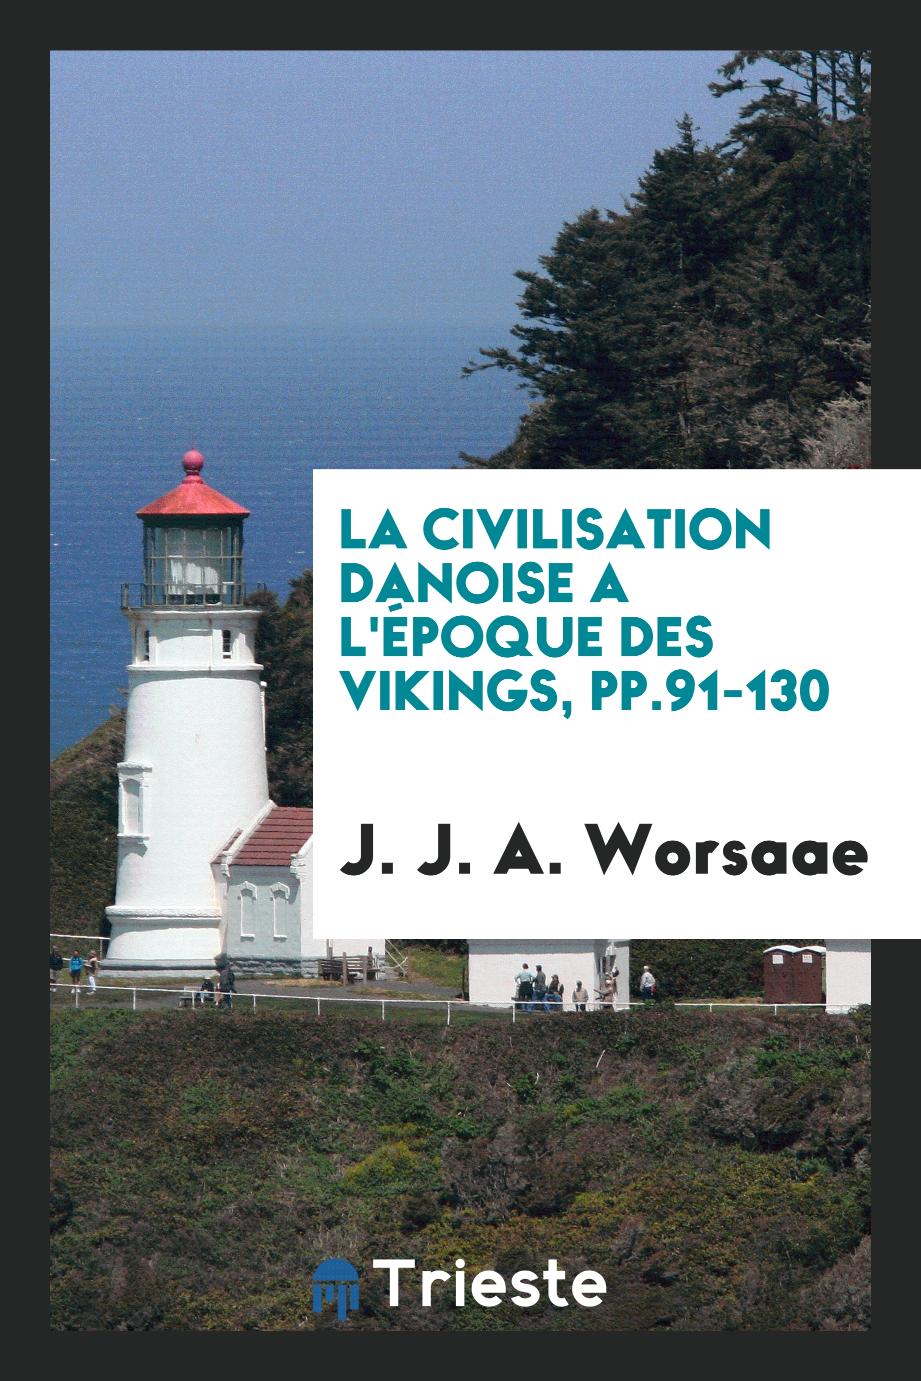 La civilisation danoise a l'époque des Vikings, pp.91-130